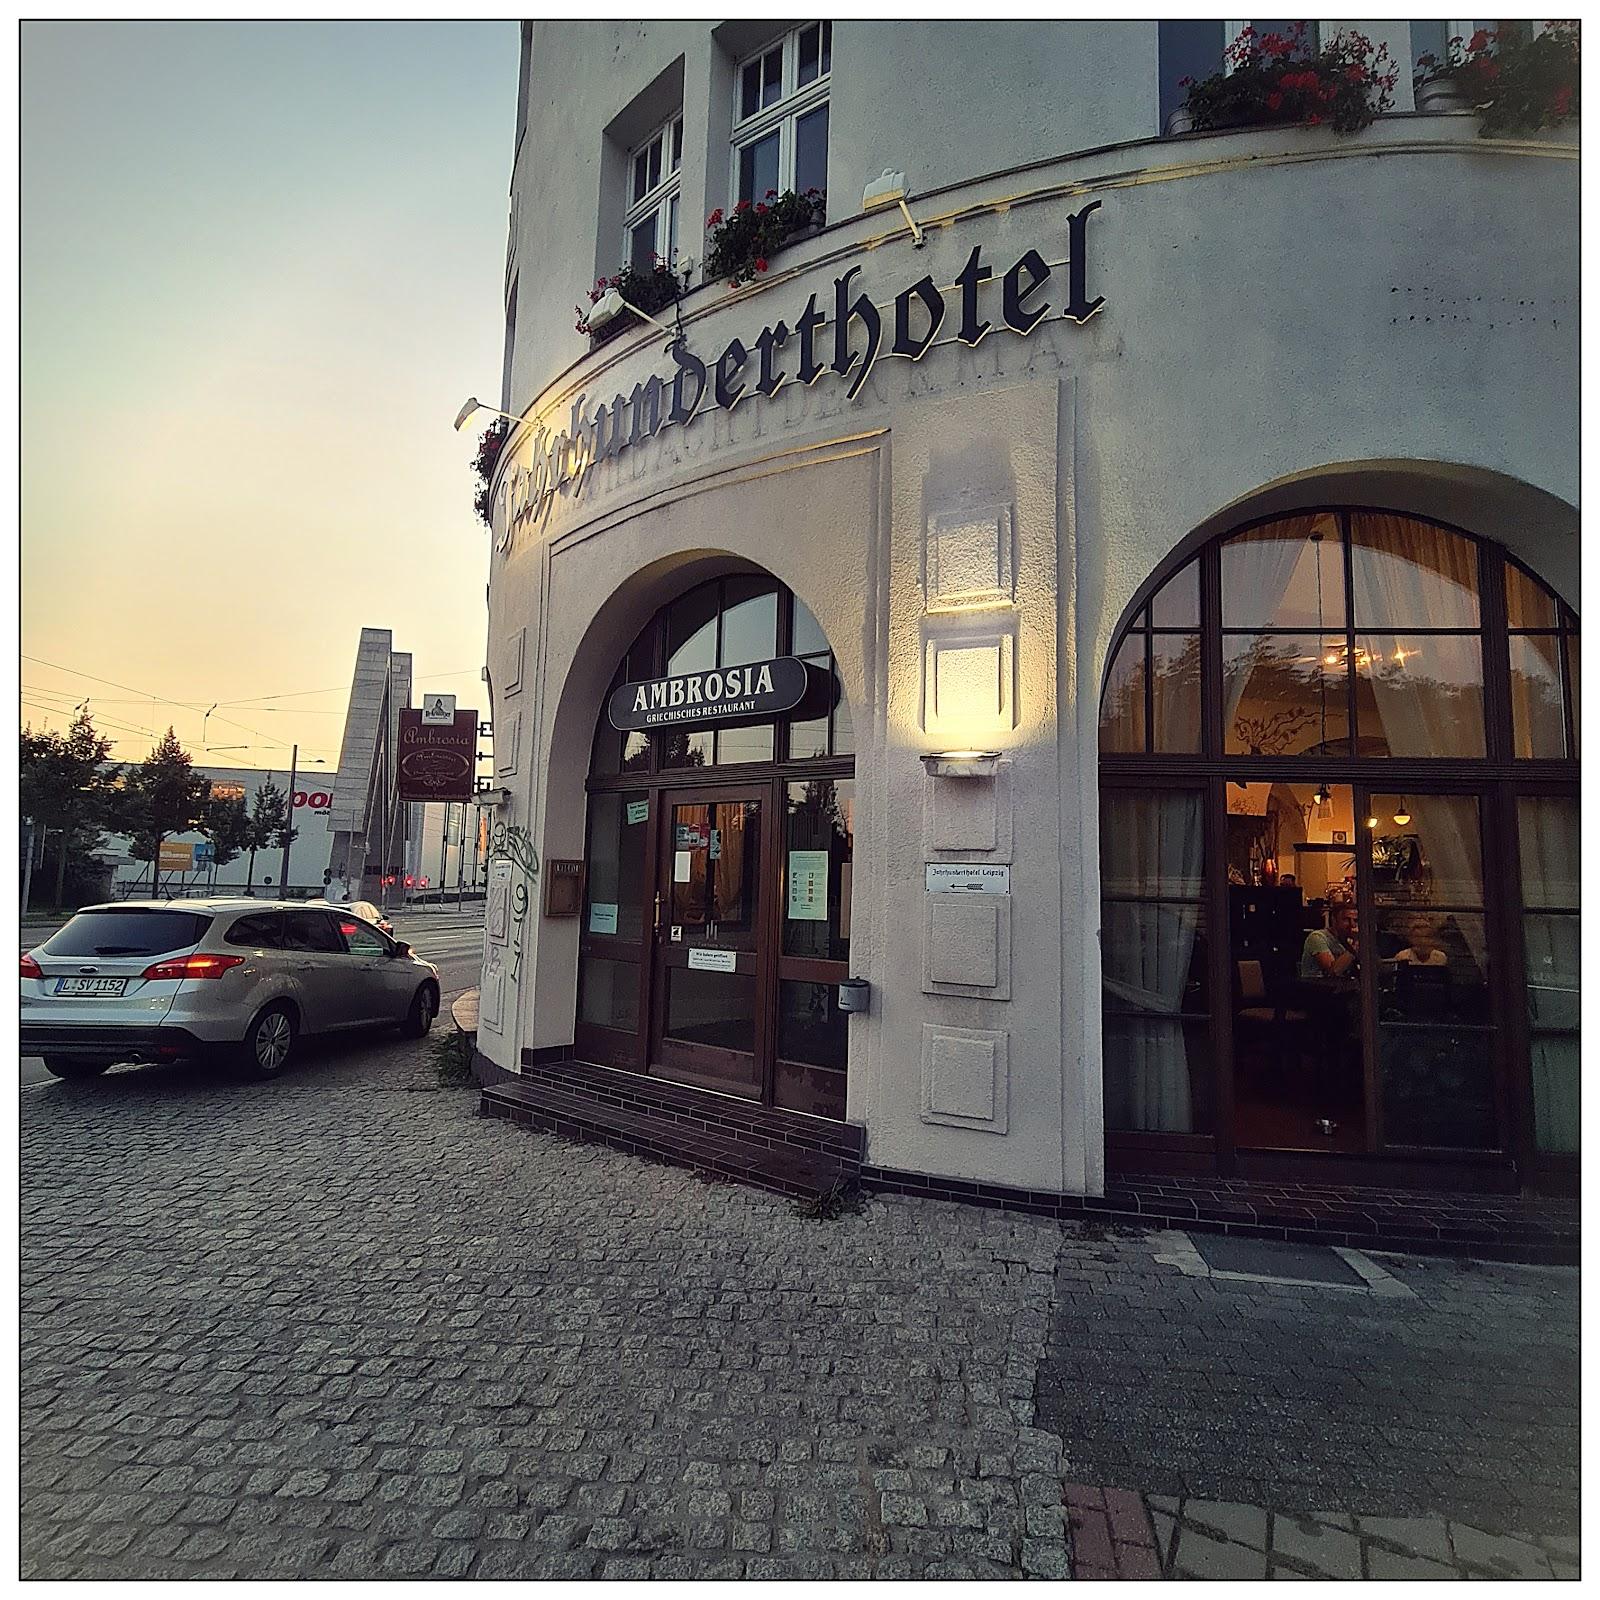 Restaurant "Ambrosia" in Leipzig